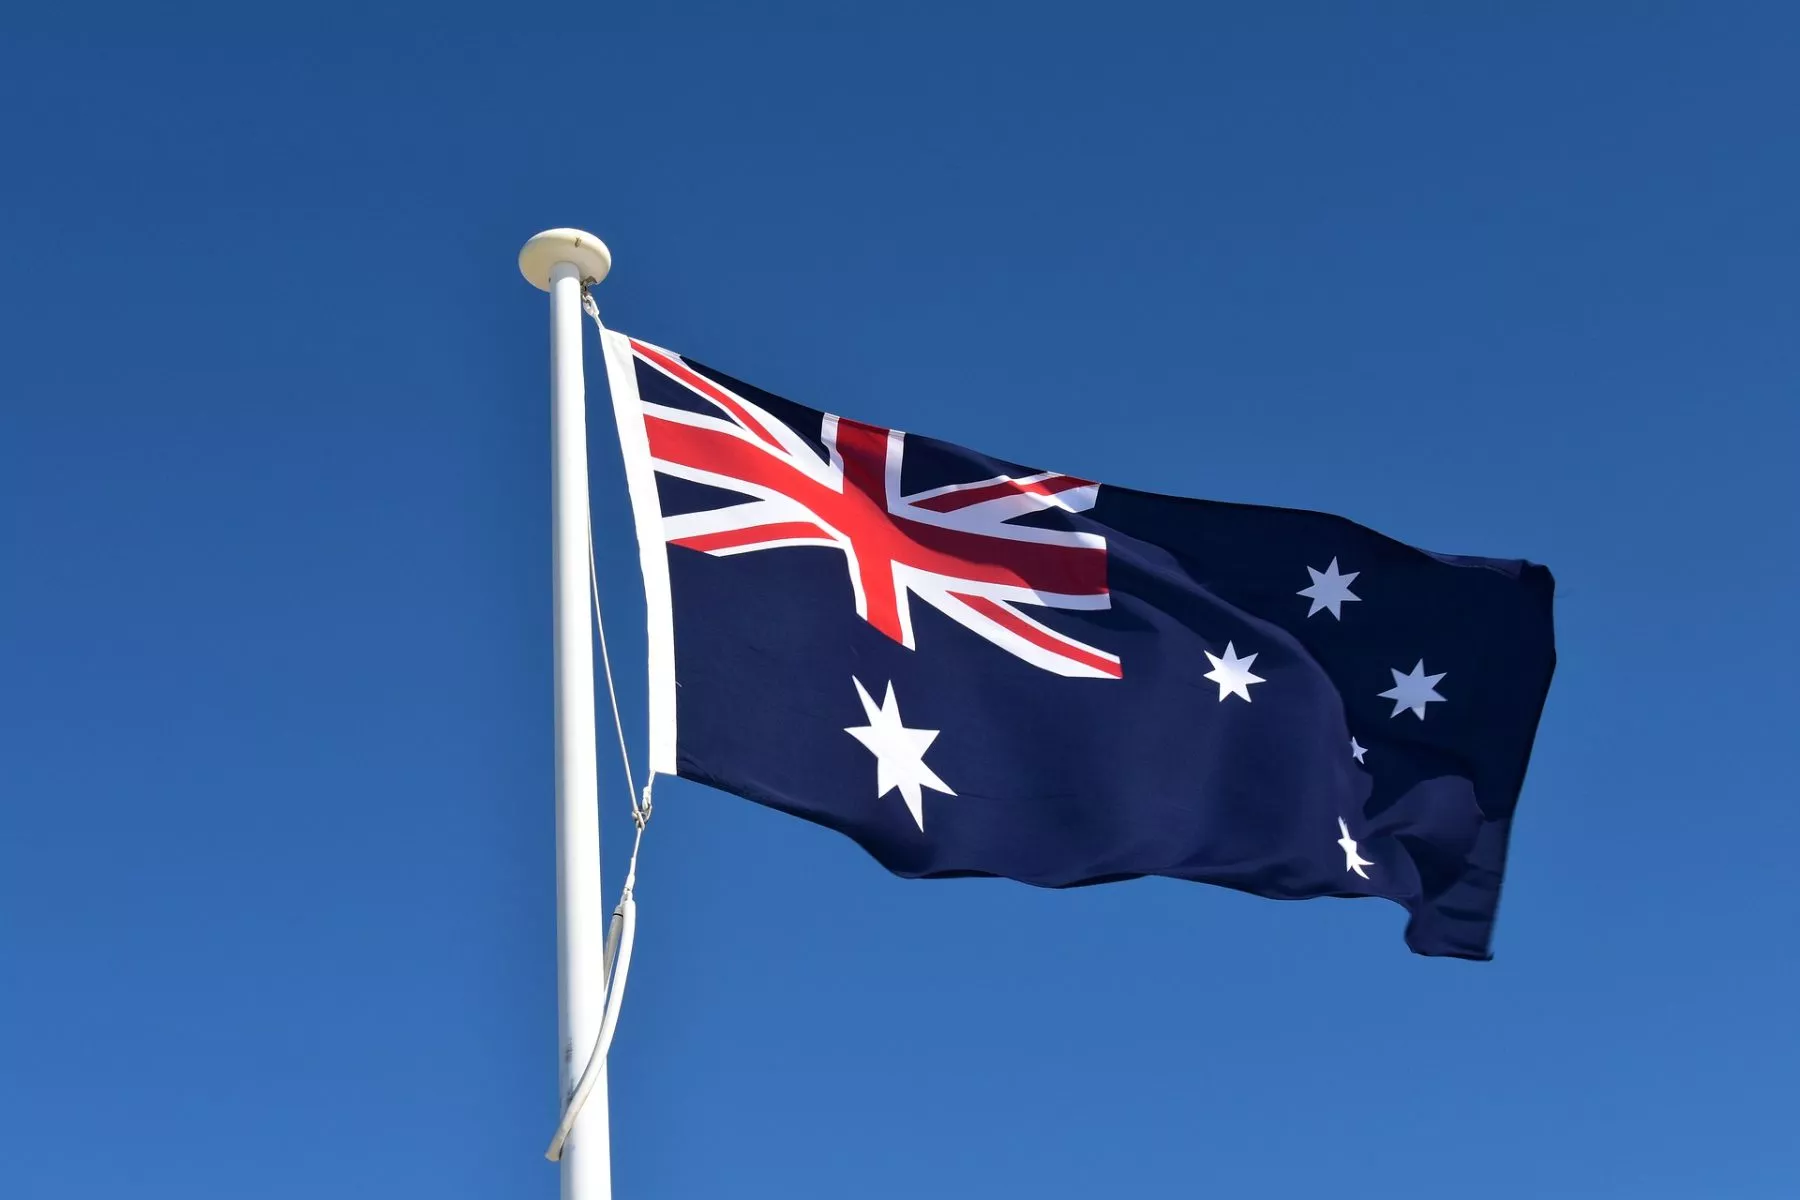 Australische minister van Financiën: ‘Crypto gaat niet snel weg’